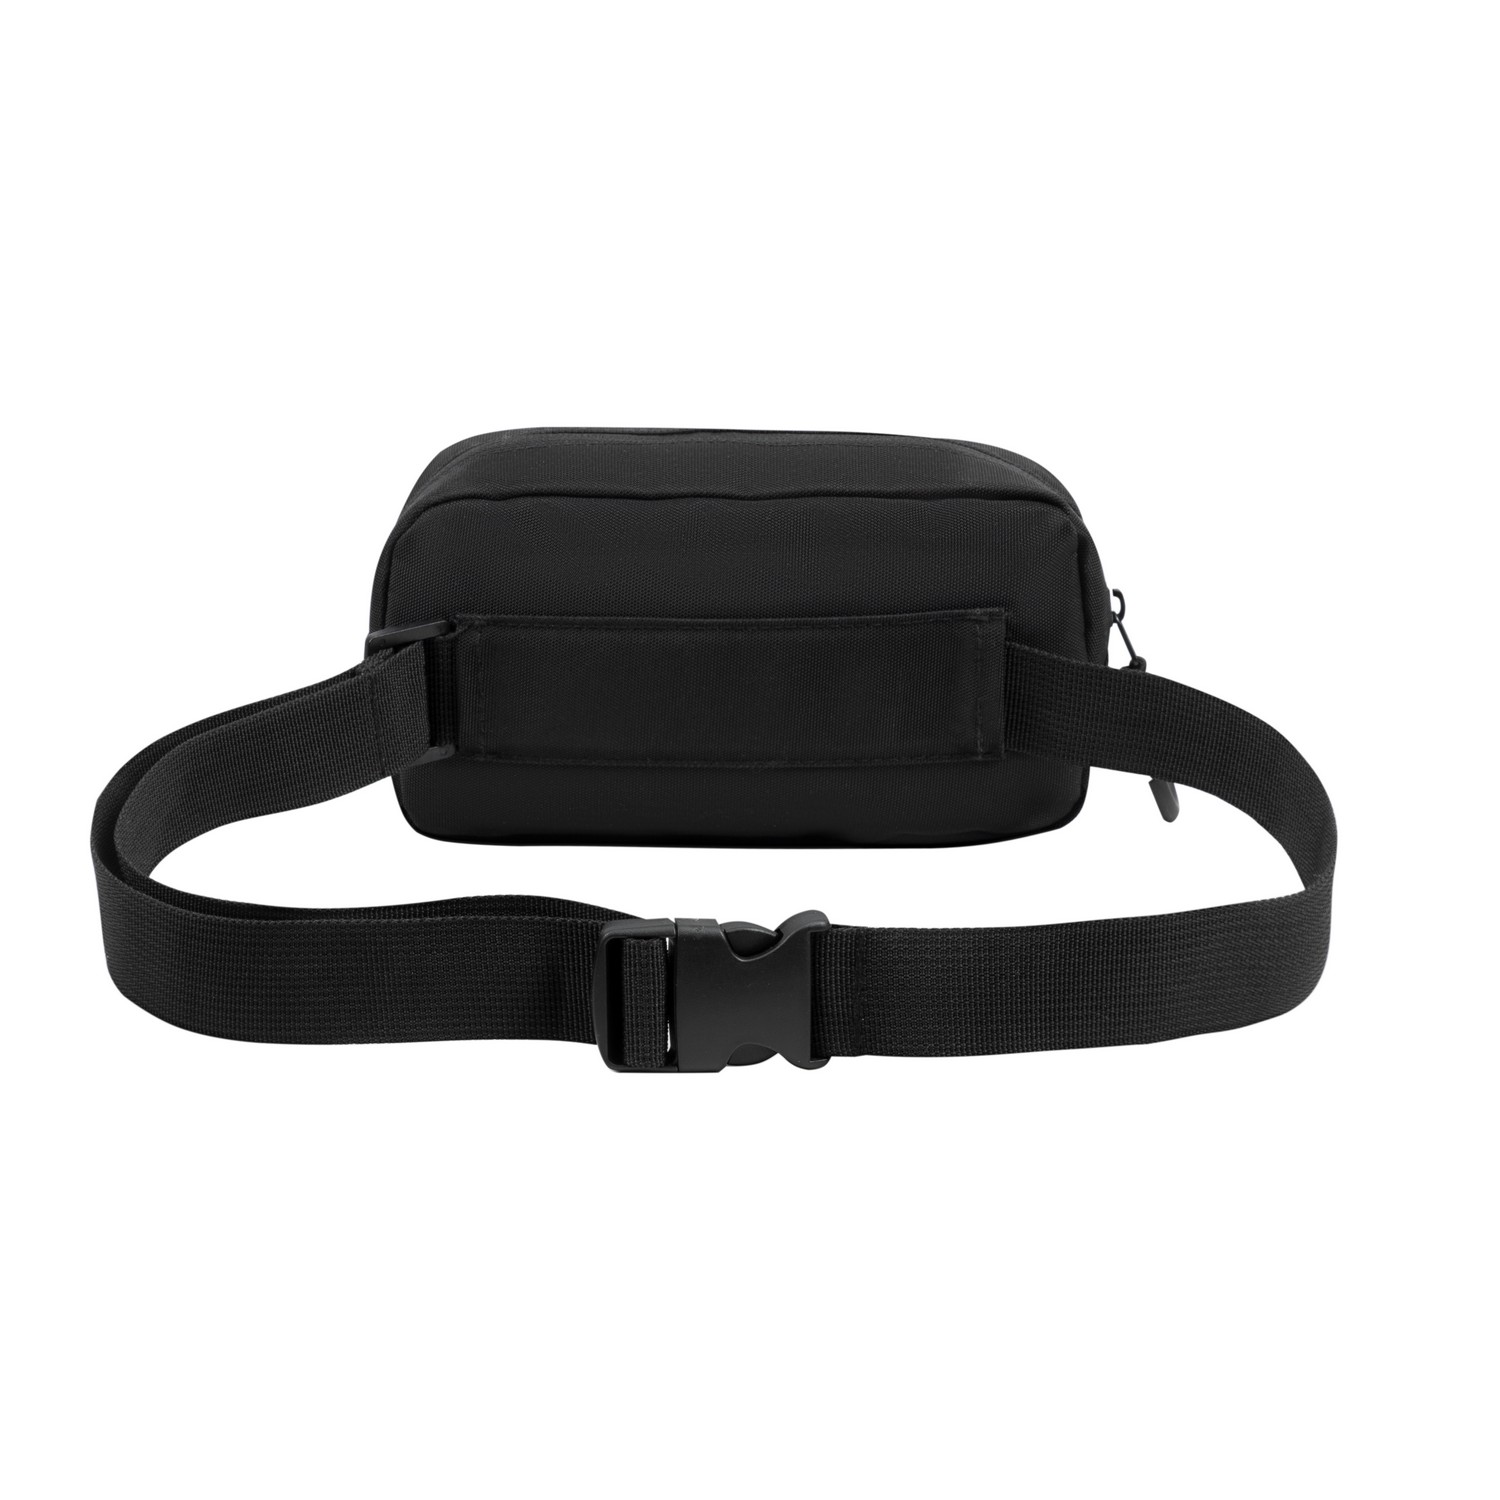 Waist & cross-body bags: 5410 black Waist bag 